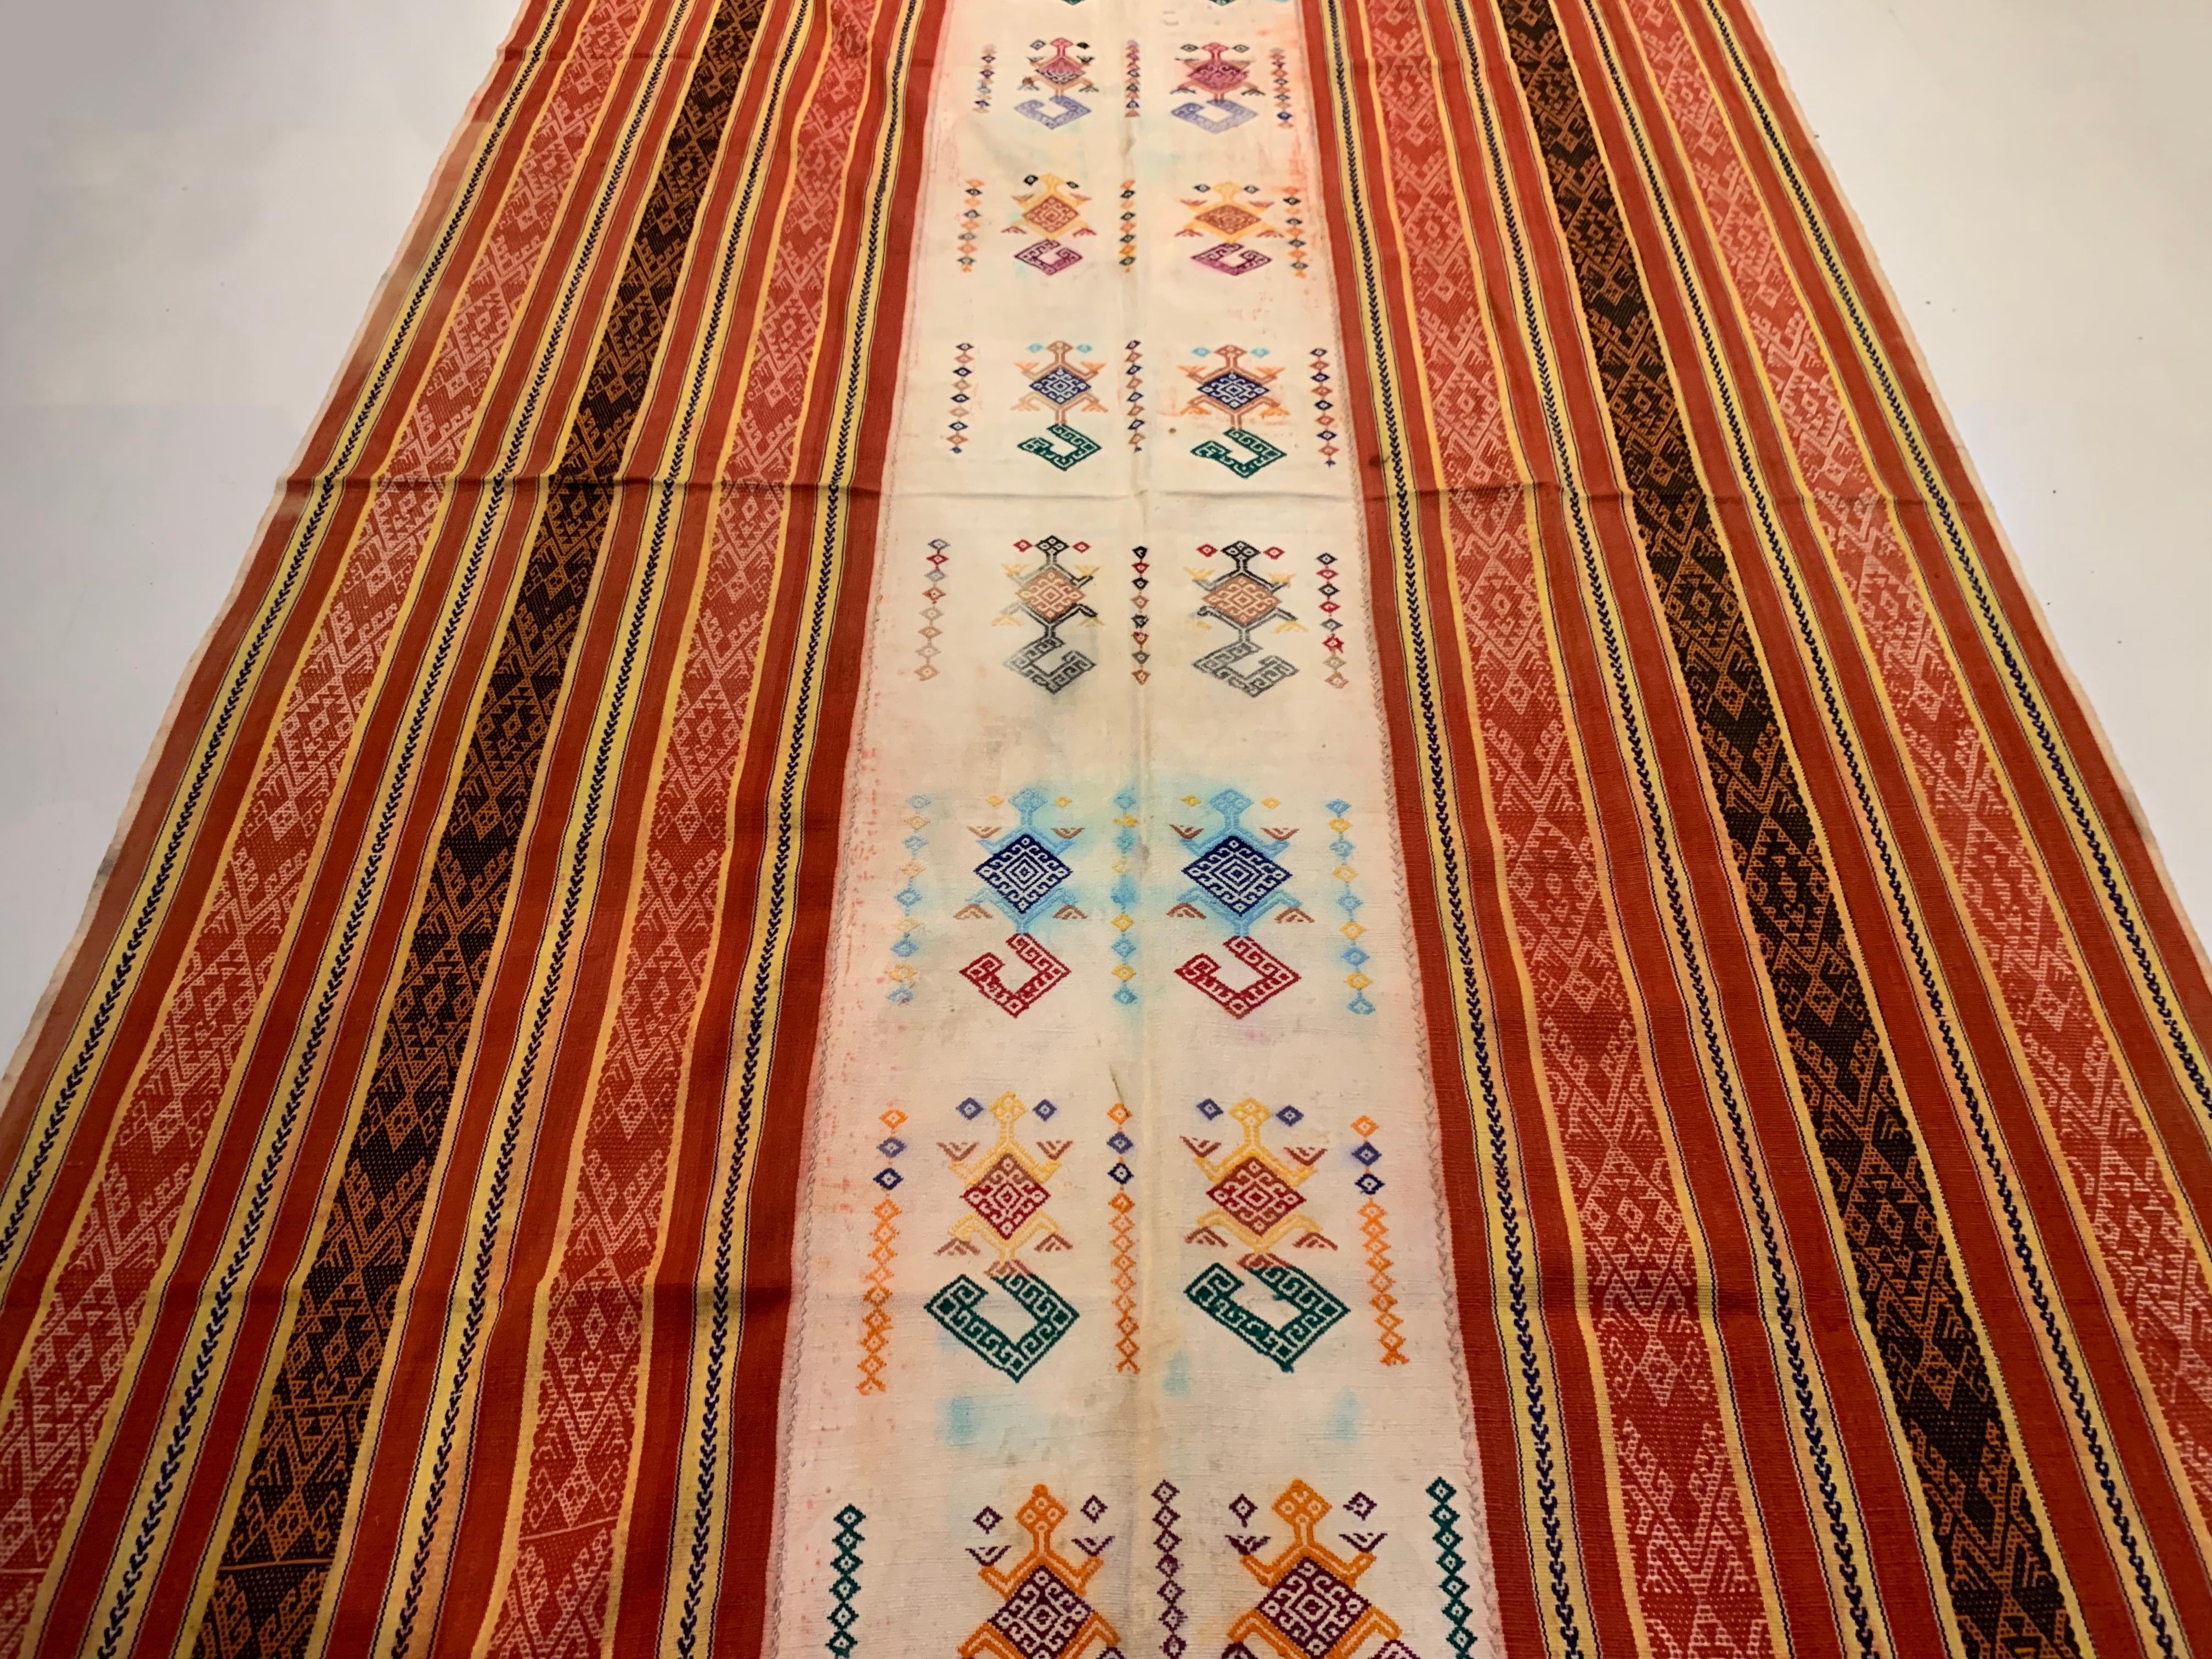 Ein wunderschönes Beispiel für ein Ikat-Textil aus Westtimor. Es wird mit natürlich gefärbten Garnen nach einer seit Generationen überlieferten Methode handgewebt. Es zeichnet sich durch eine atemberaubende Vielfalt an unterschiedlichen